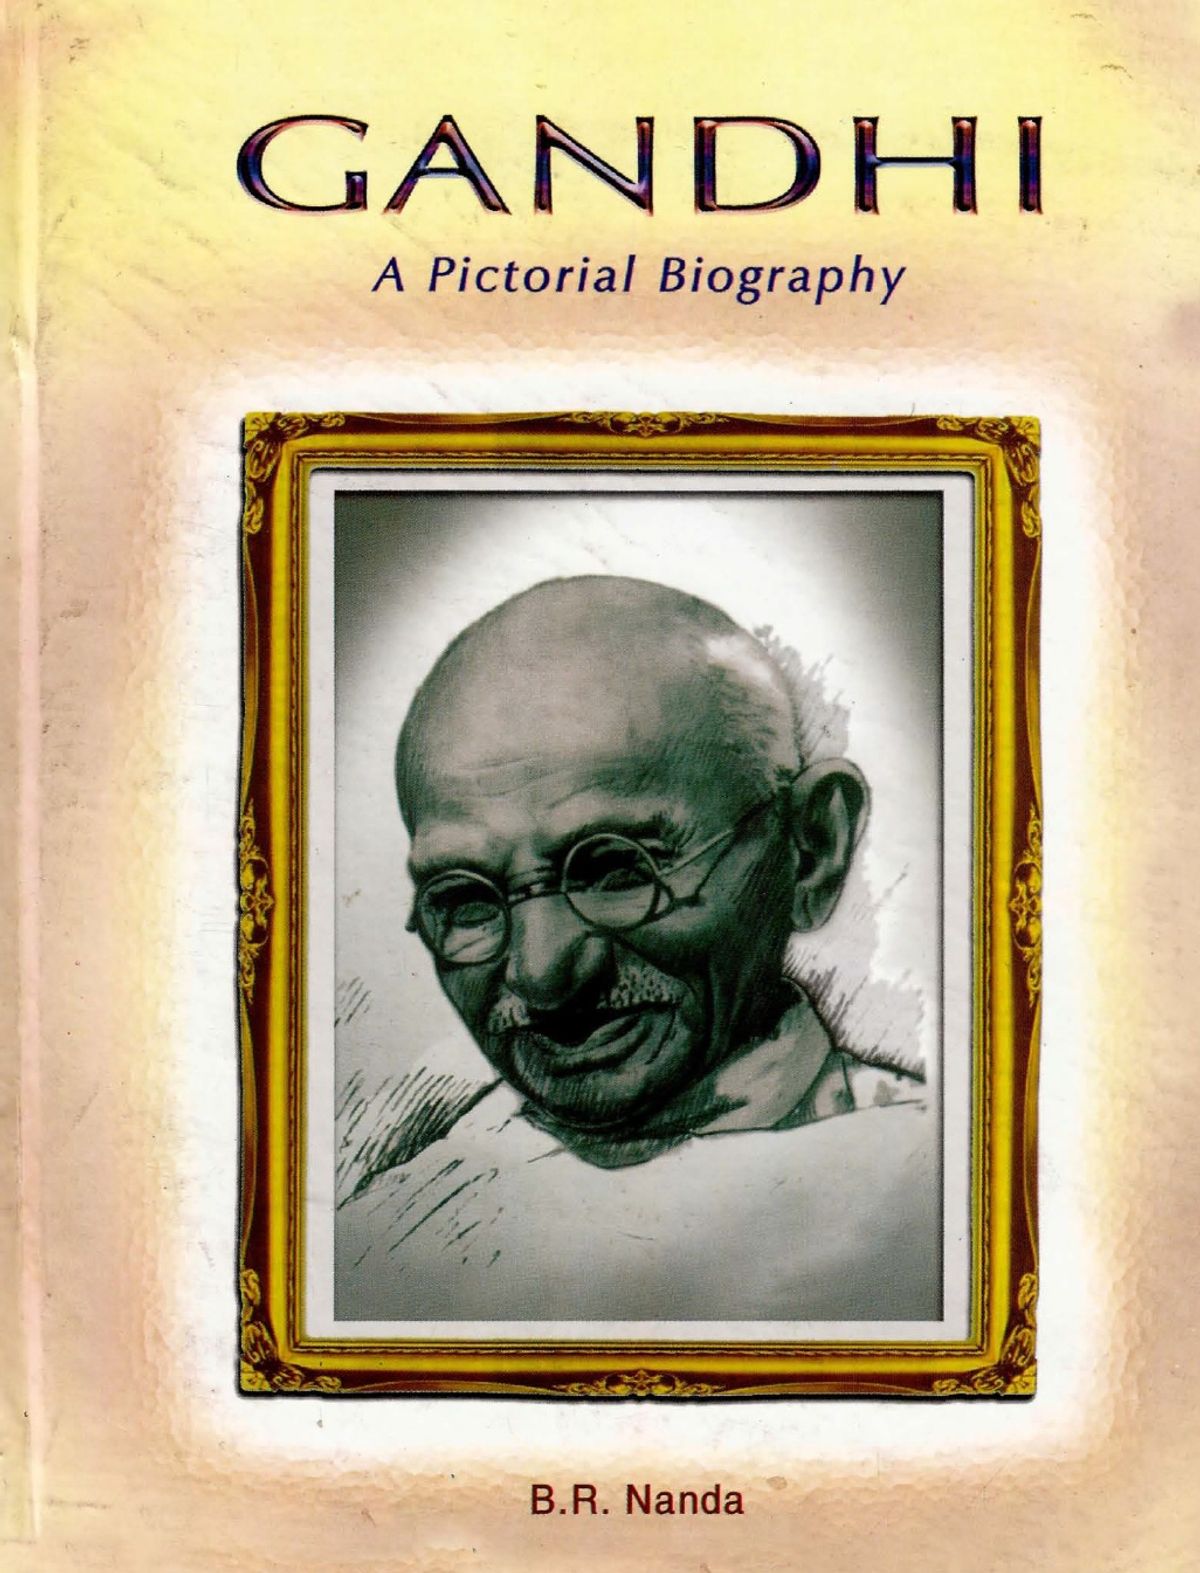 Mahatma Gandhi Pictorial Biography - complete book online ...